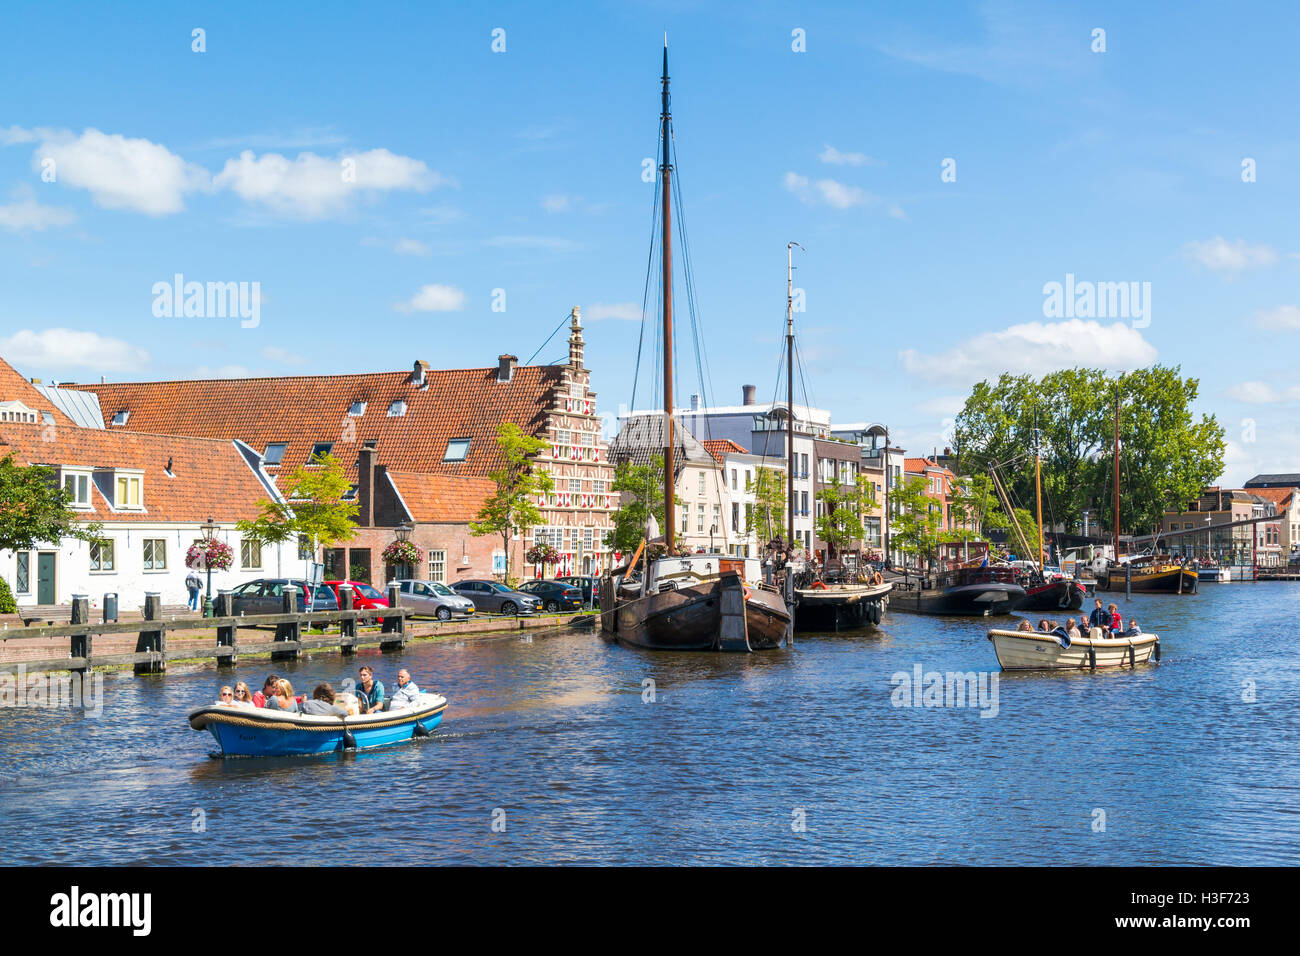 Menschen in Bargen auf Grachtenfahrt und City wharf Stadstimmerwerf am Galgewater-Kanal in Leiden, Südholland, Niederlande Stockfoto